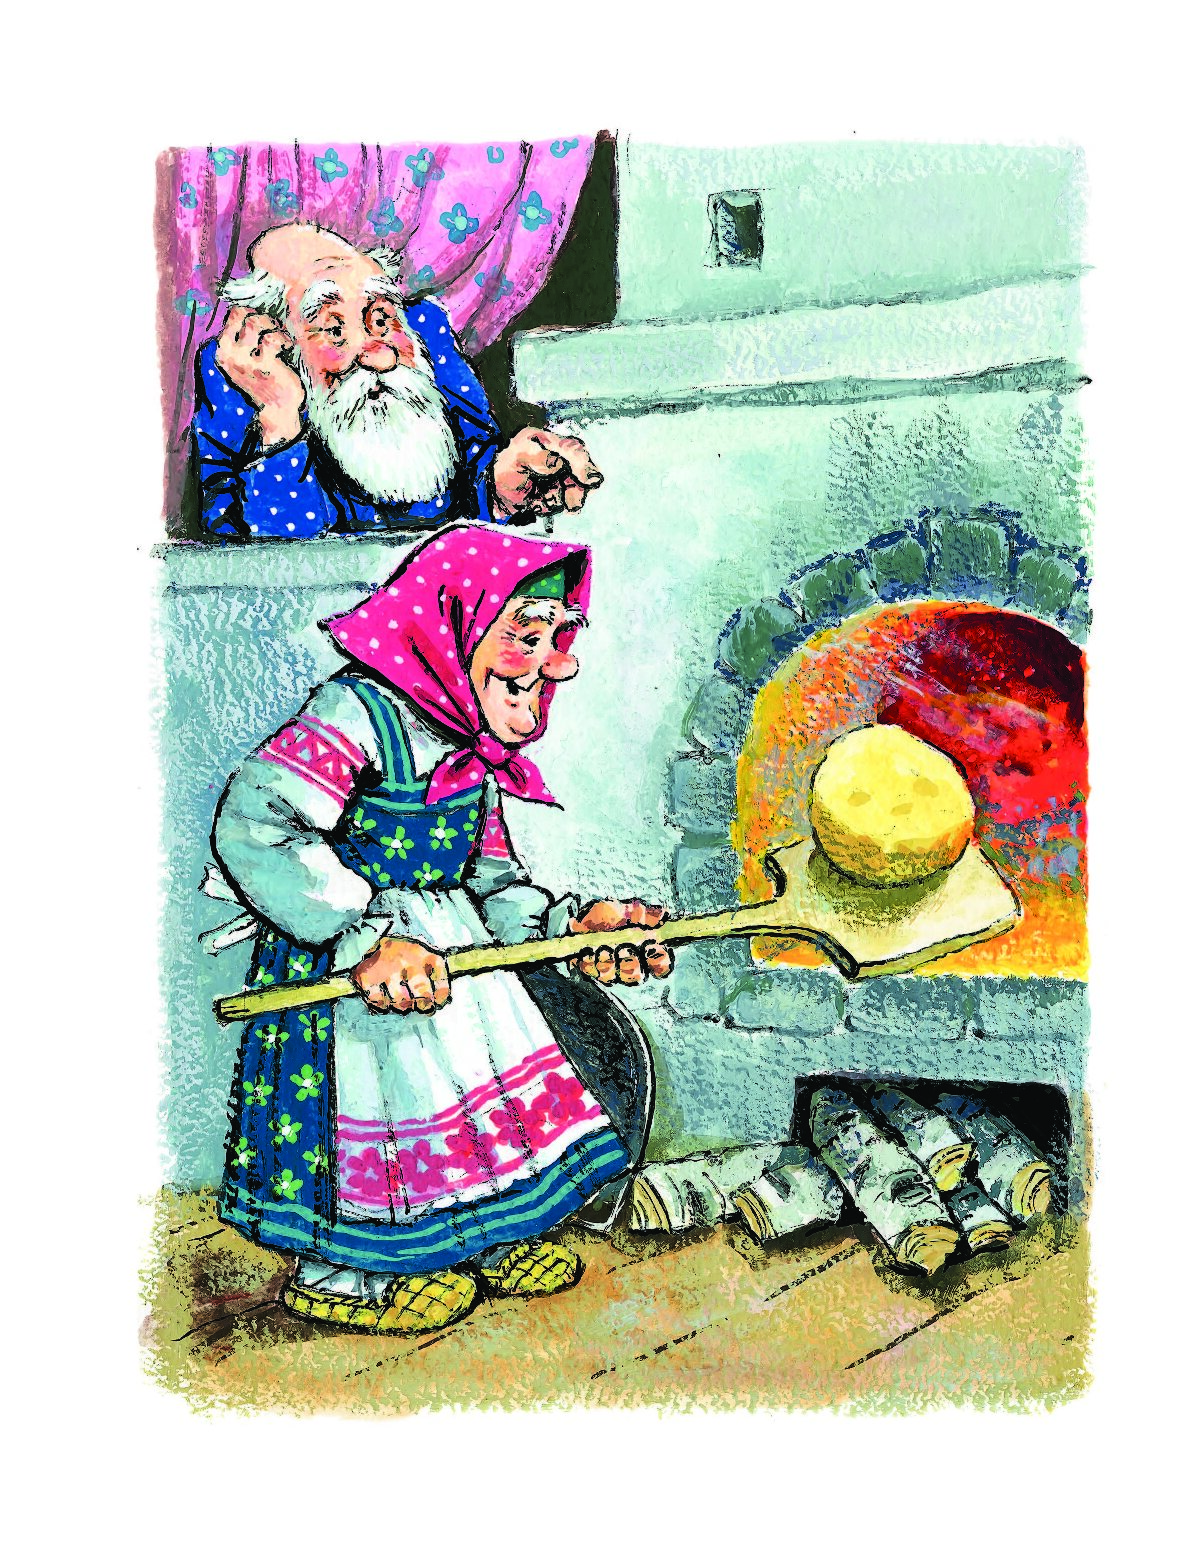 Печена бабка. Иллюстрации к сказке Колобок Савченко. Старуха печет Колобок.